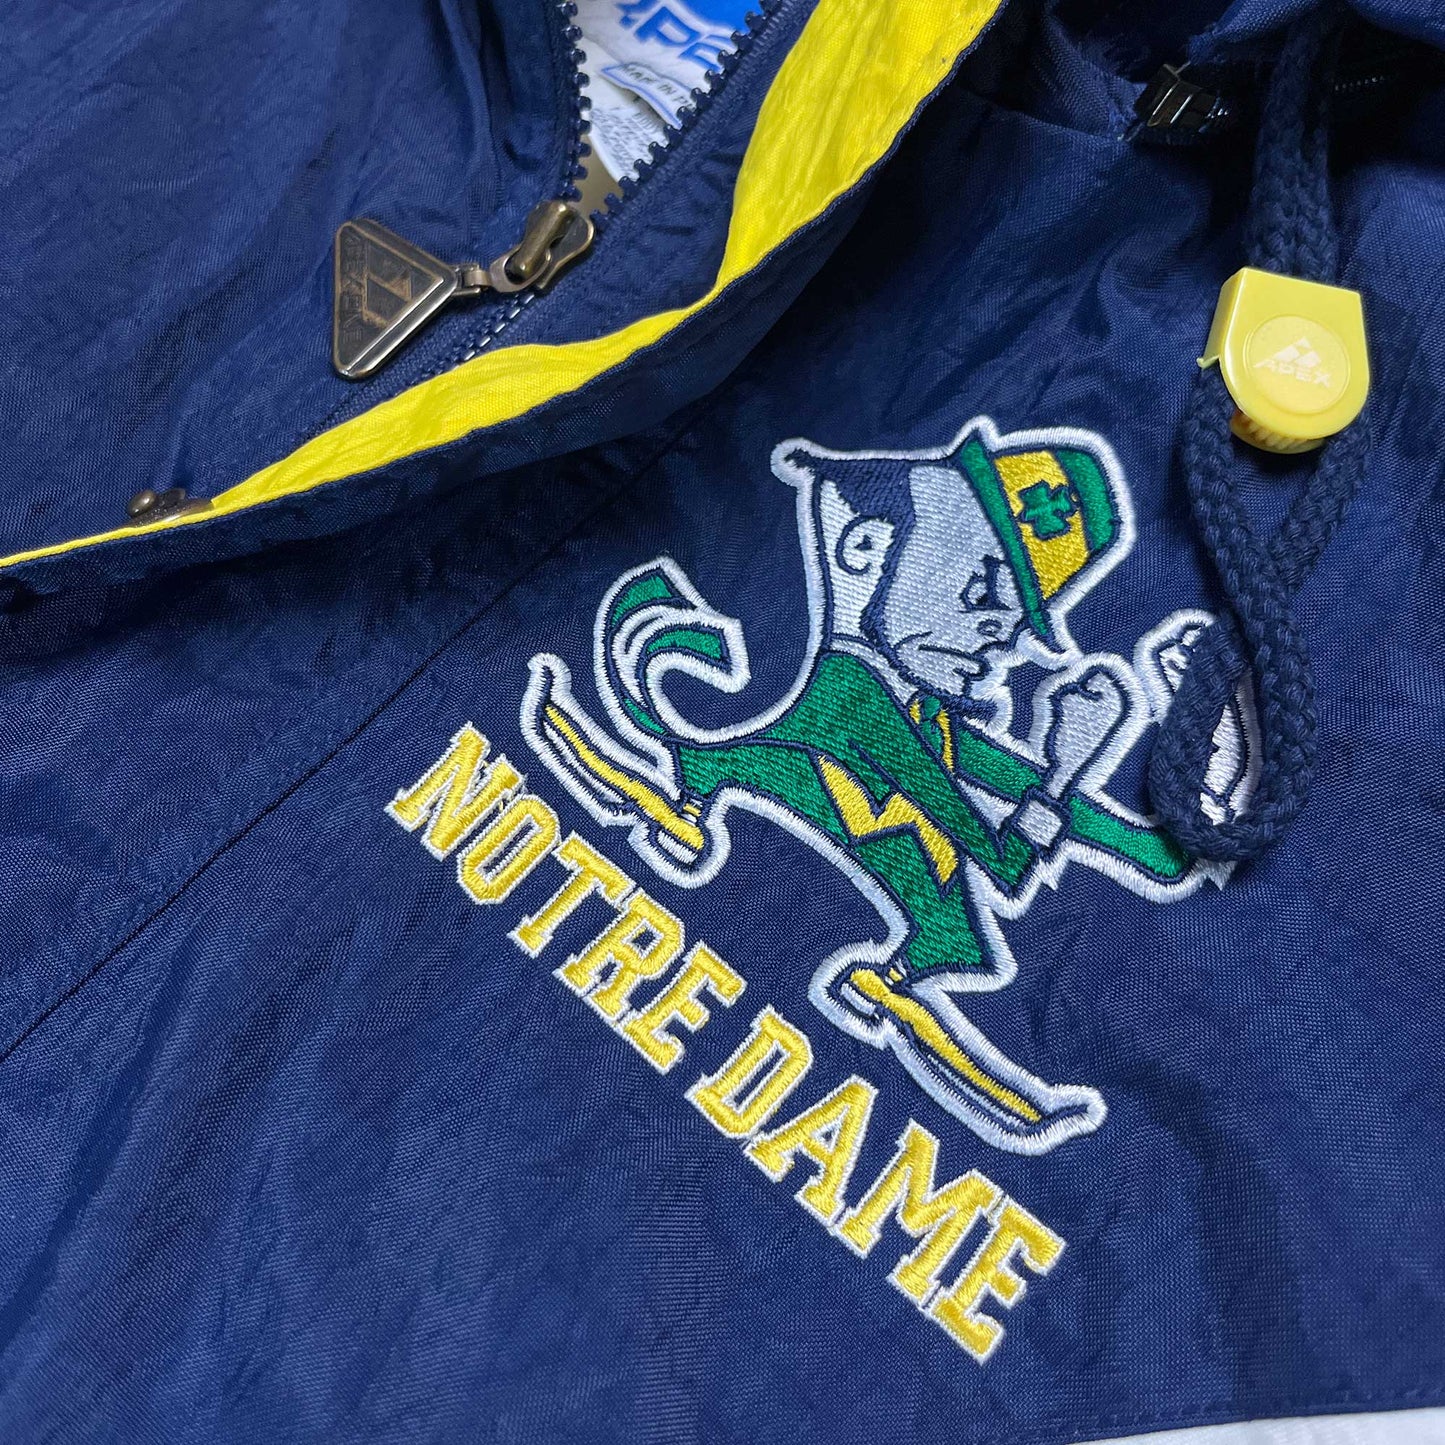 Notre Dame Fighting Irish - gefütterte NCAA Jacke - Größe L - Apex One